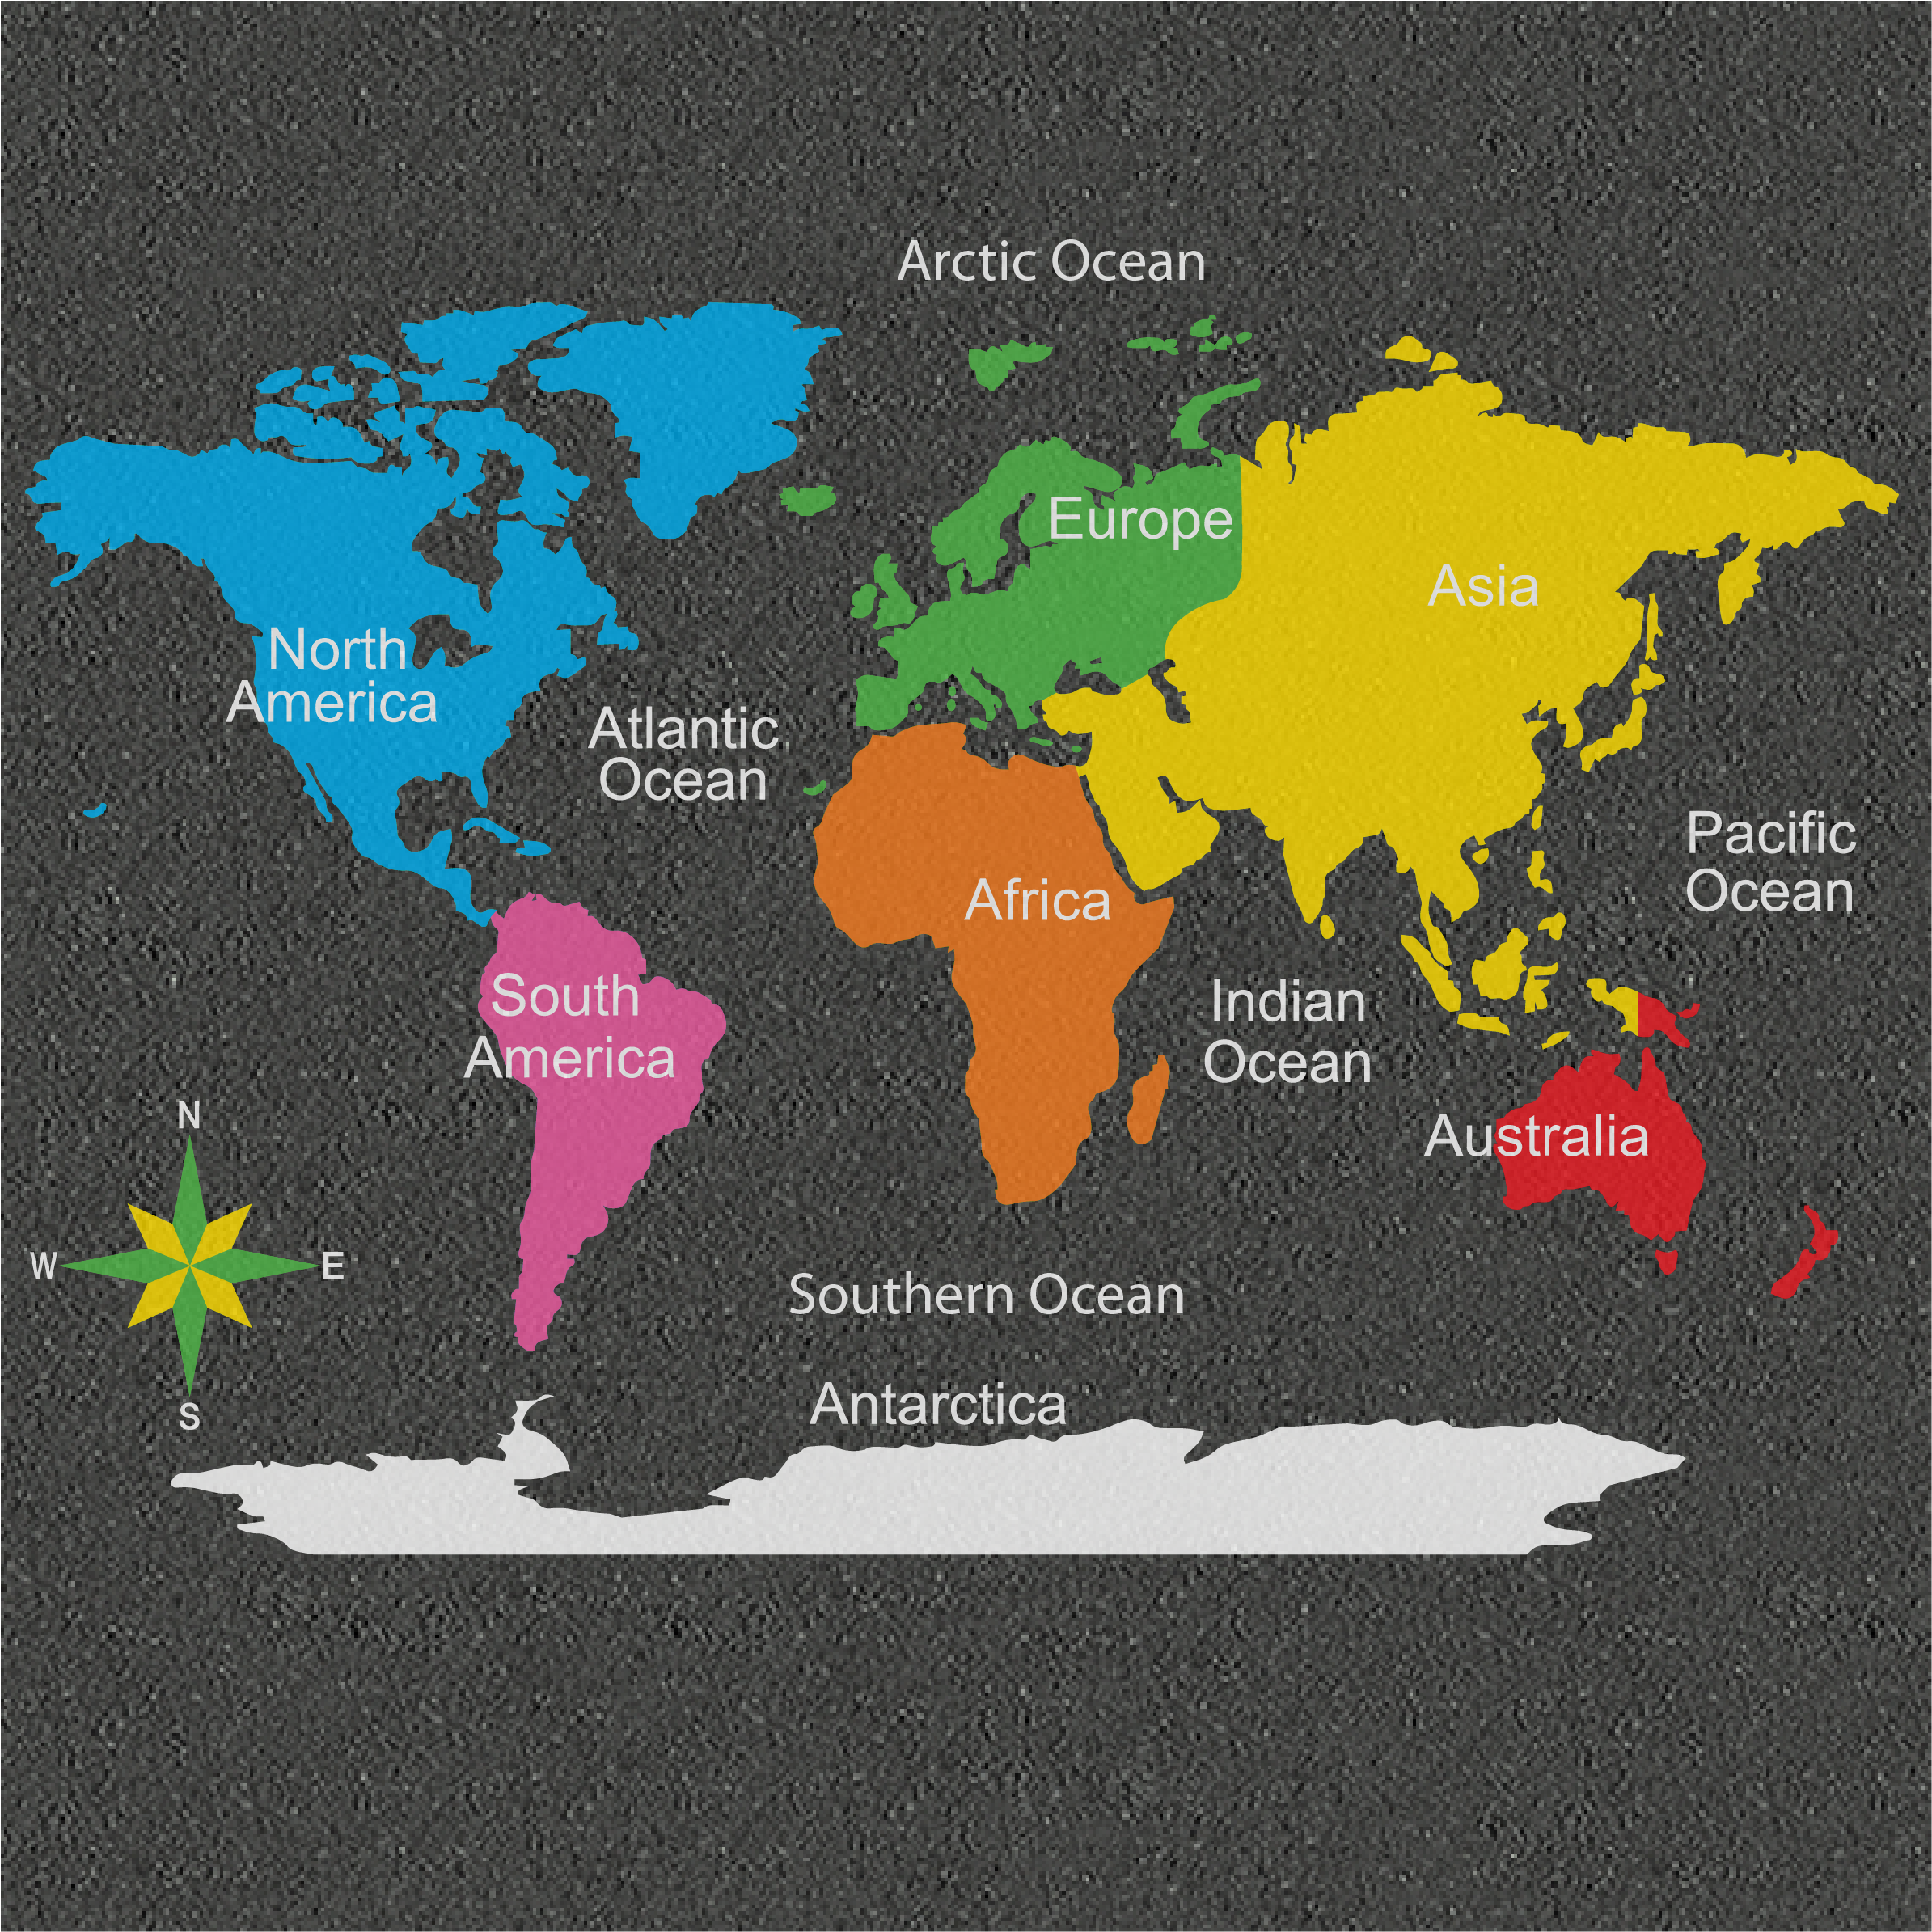 Two continents. Материки на карте. Карта континентов.